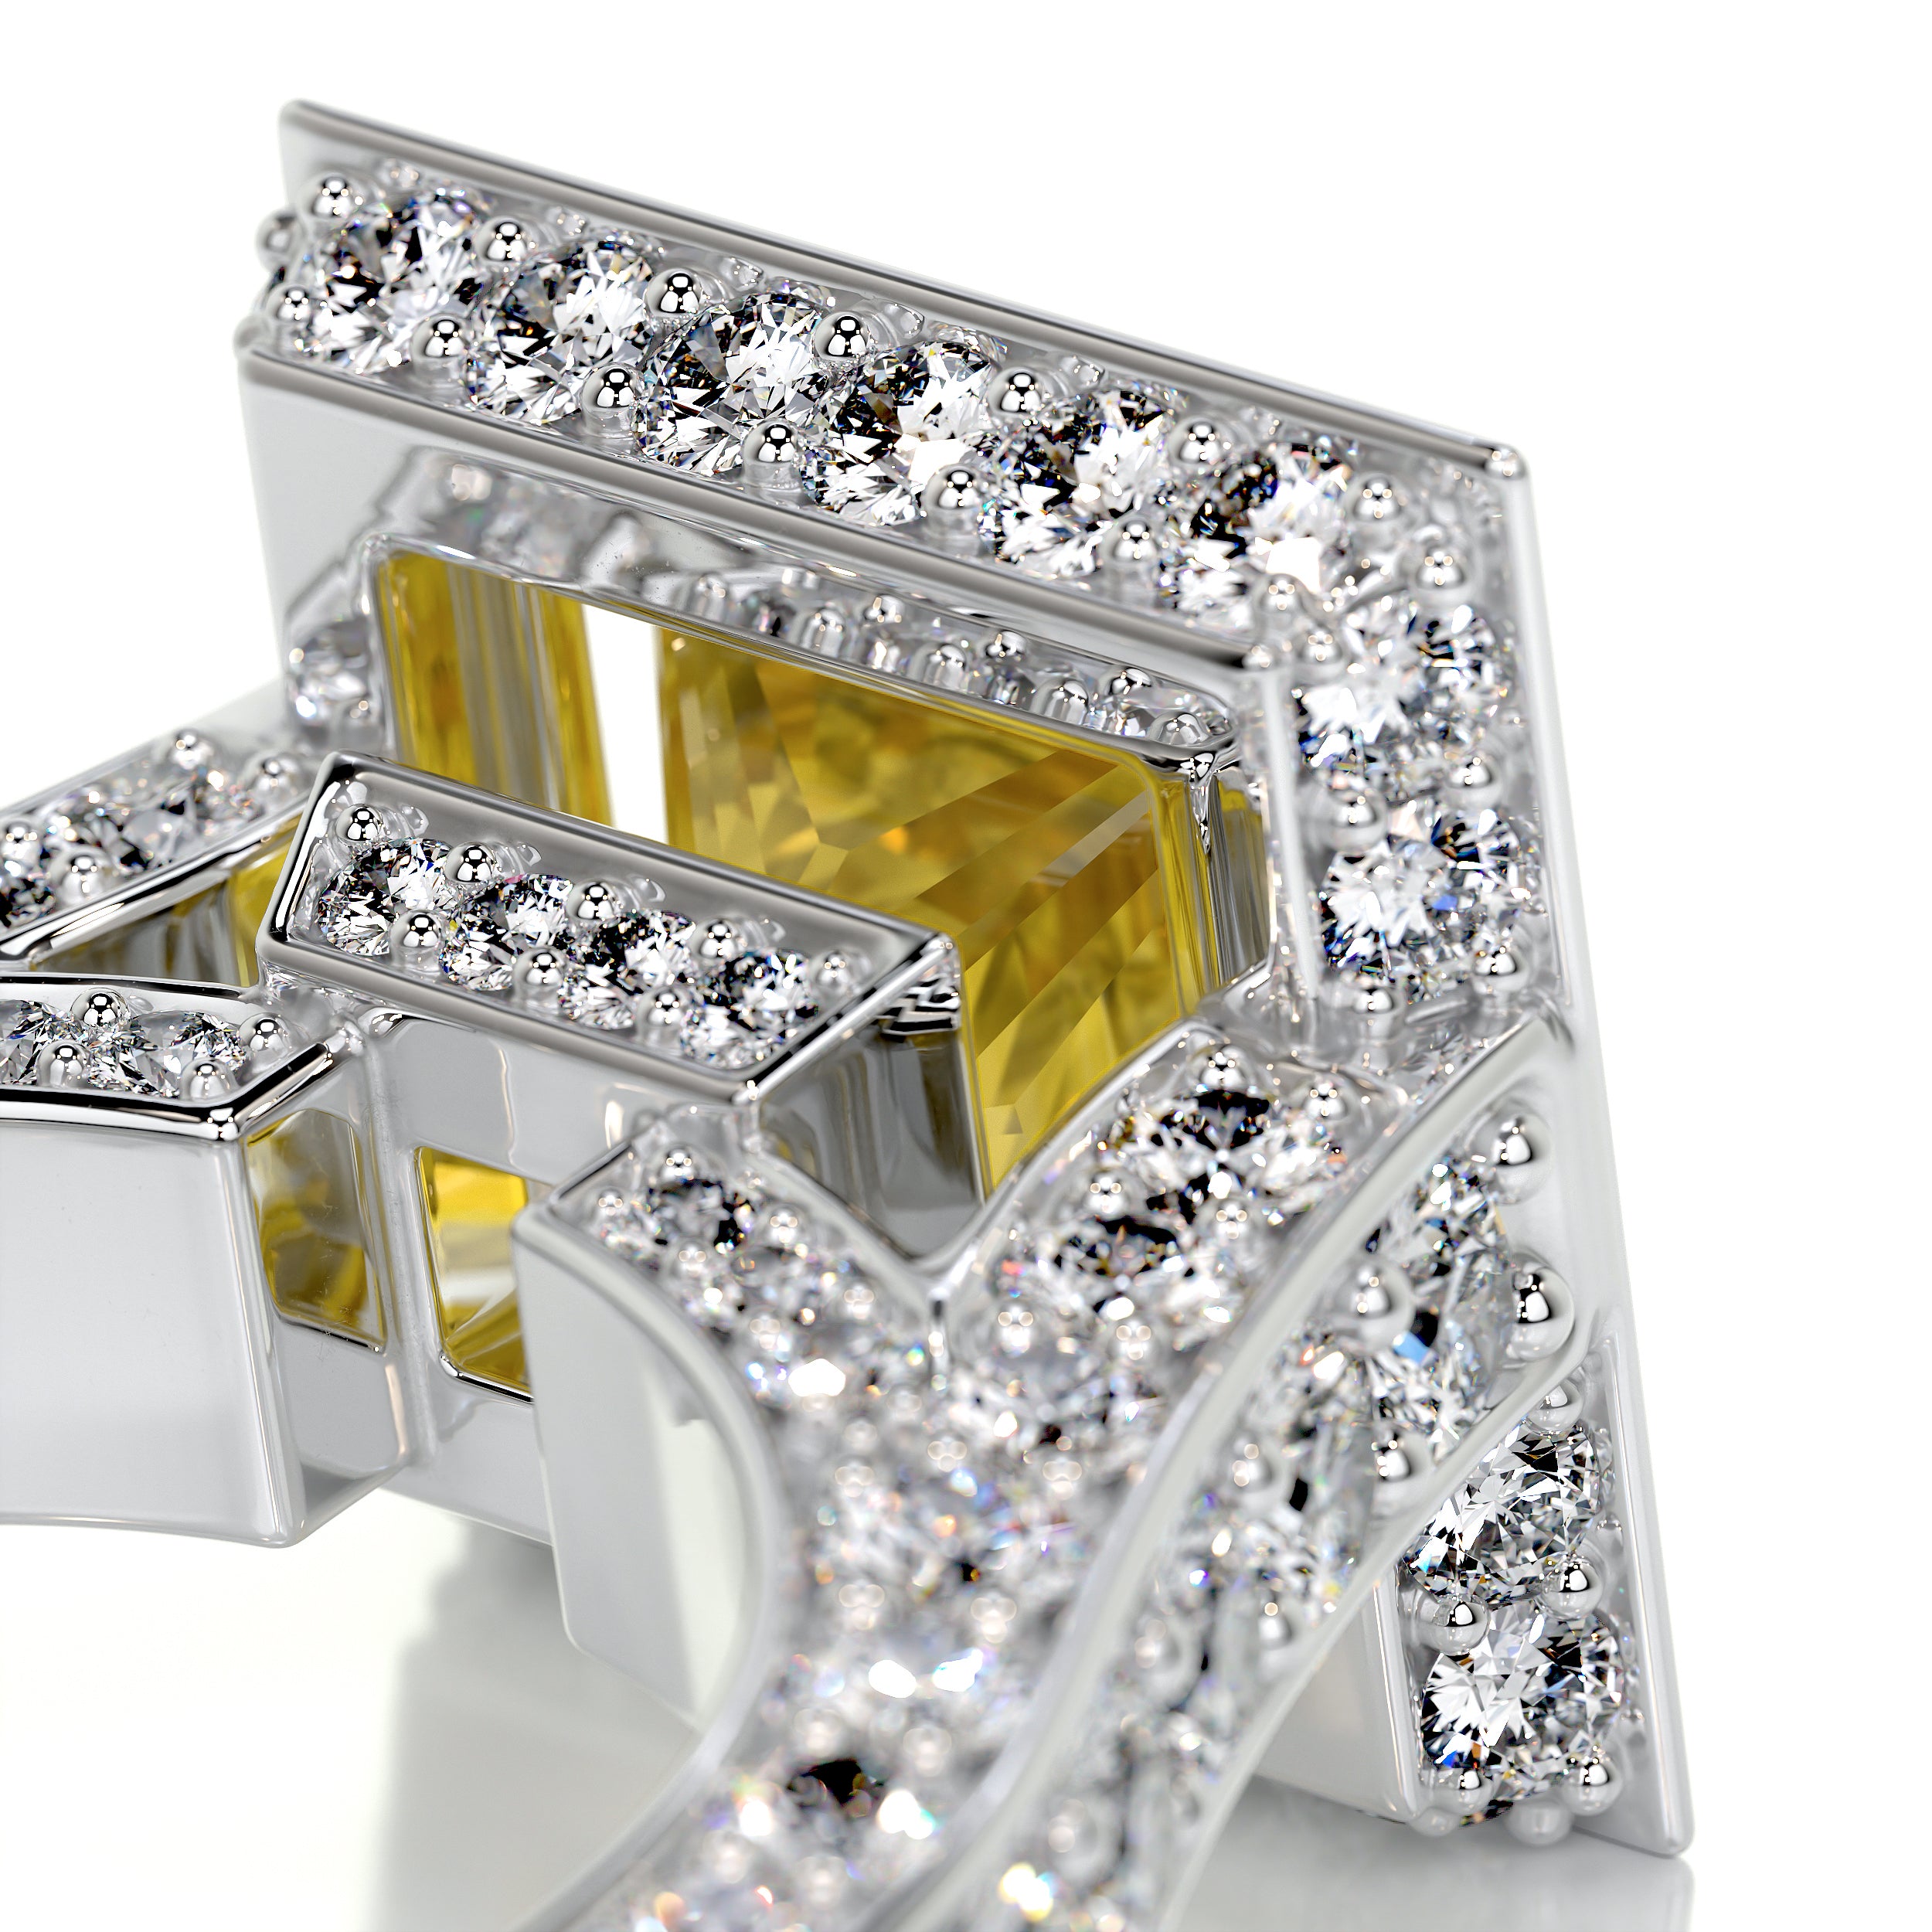 Freya Diamond Engagement Ring   (4.5 Carat) -18K White Gold